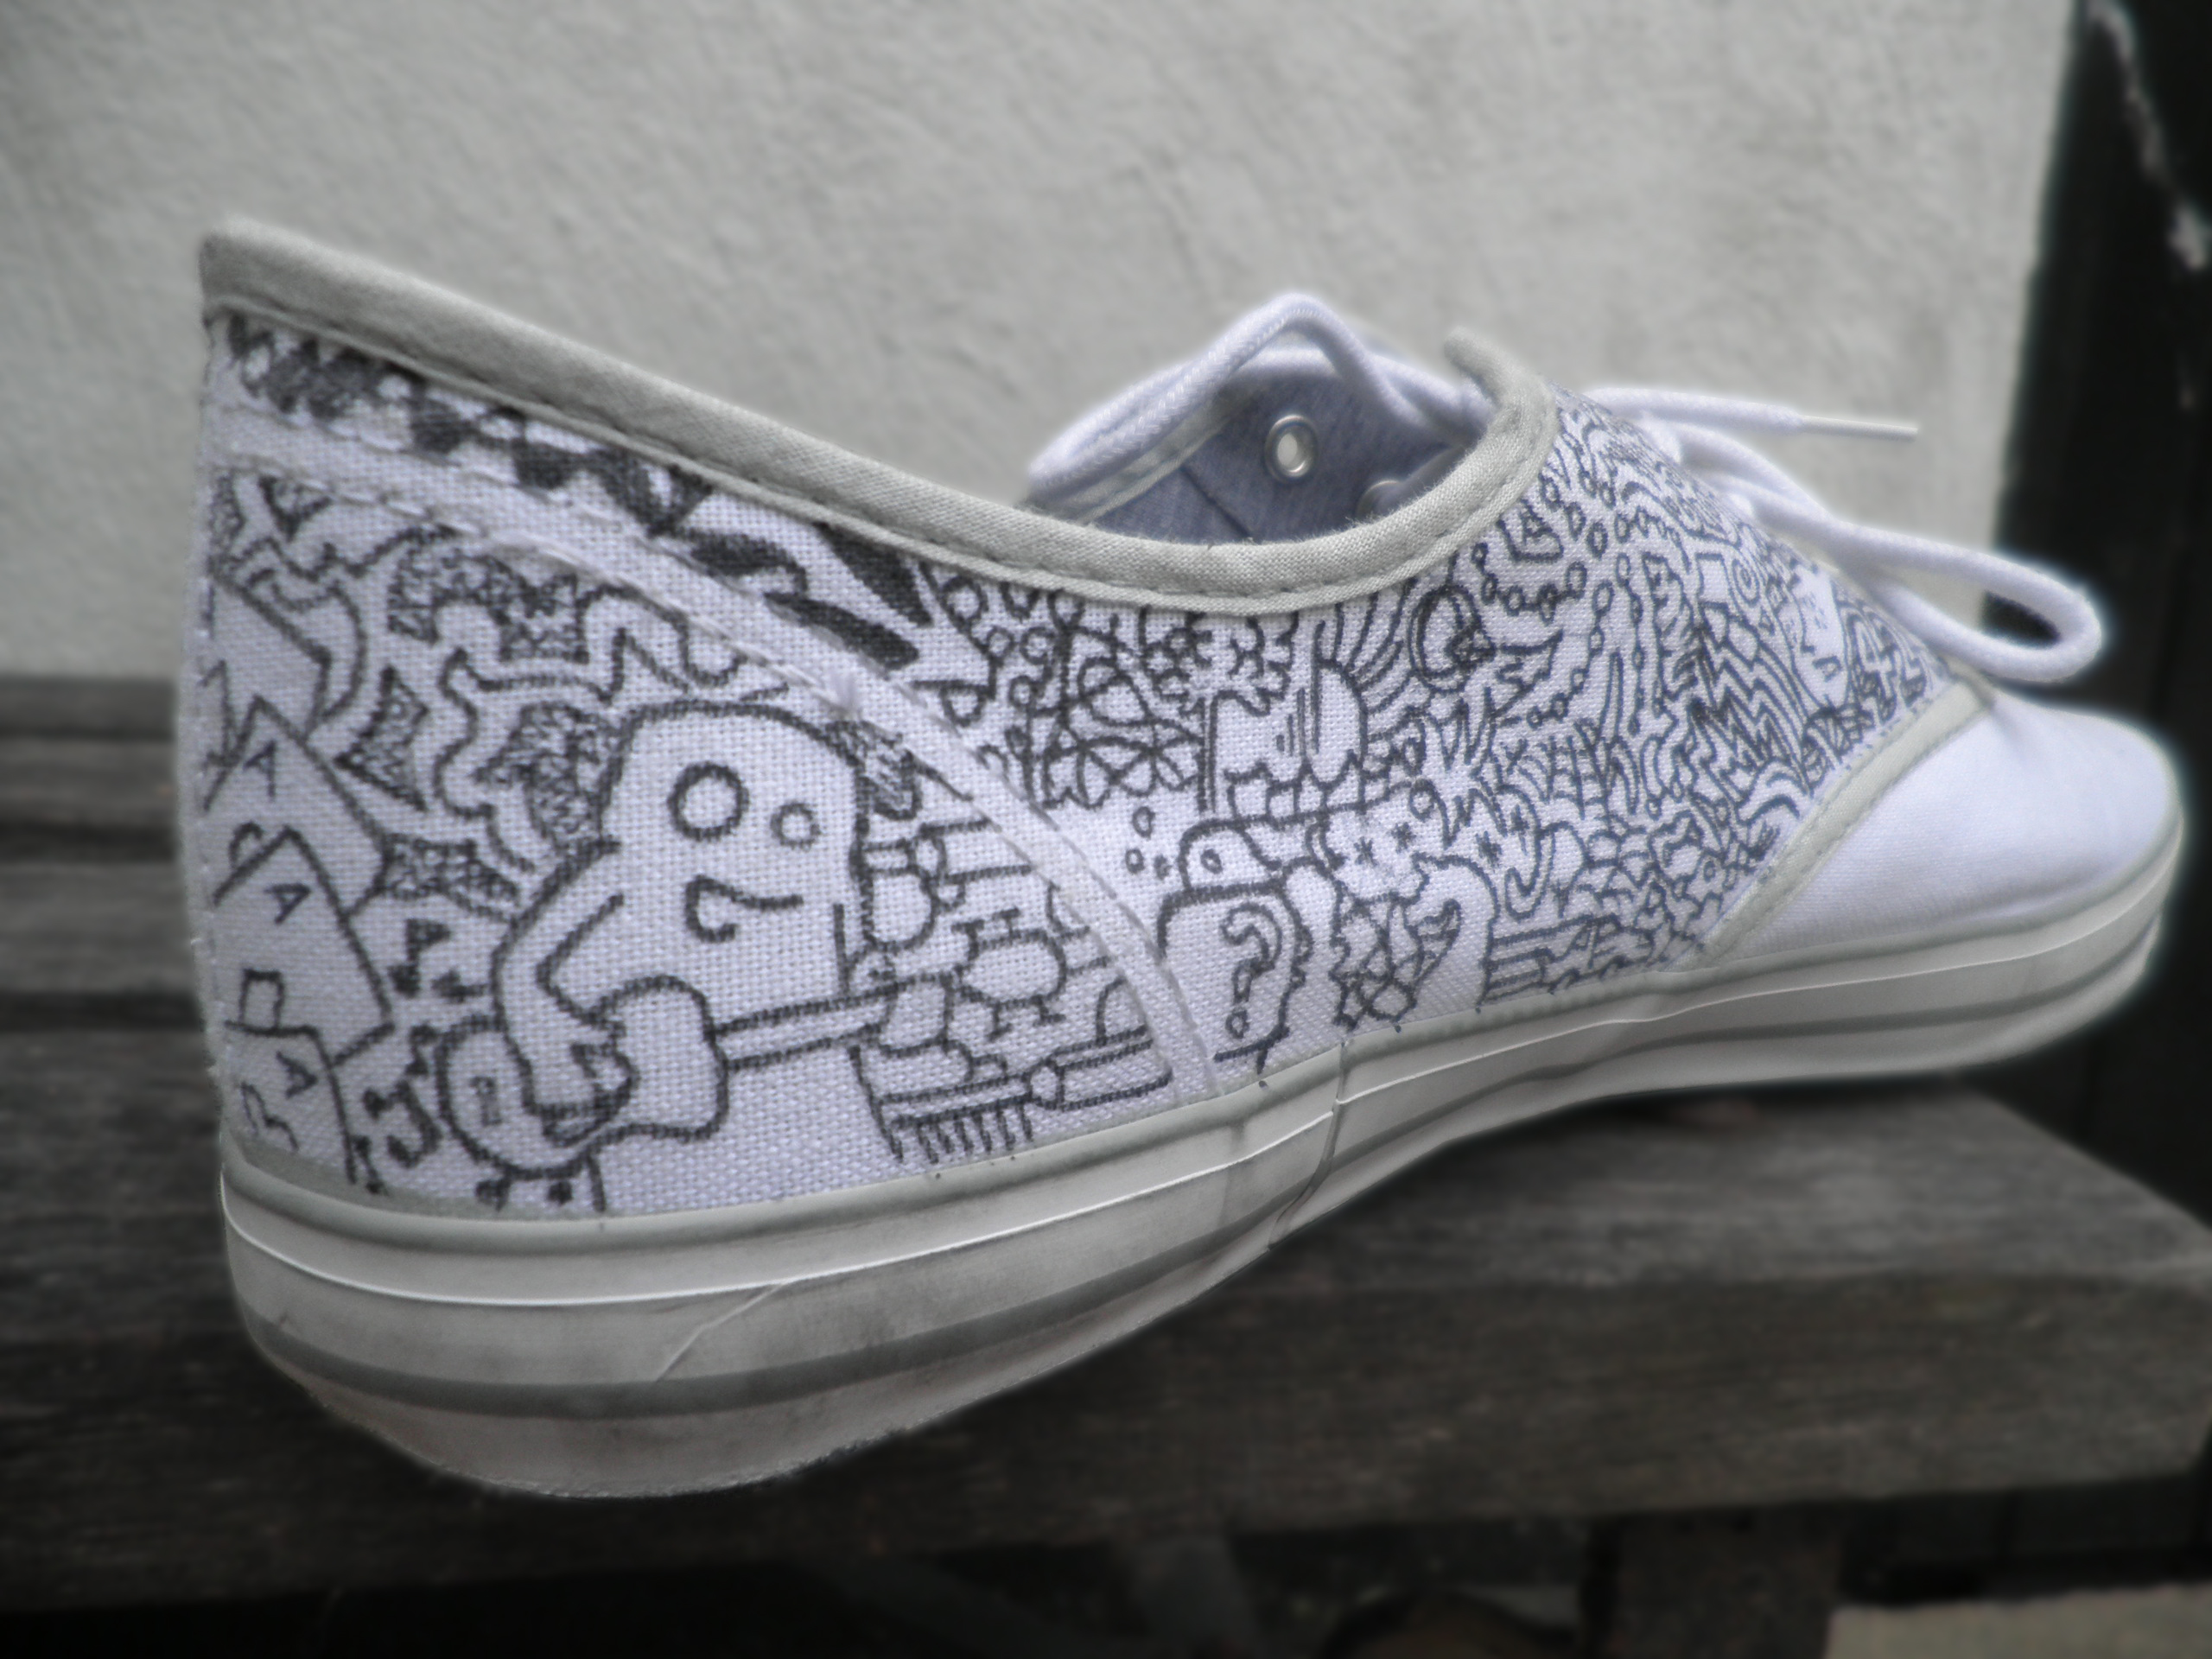 Doodle Shoes Sketchblog